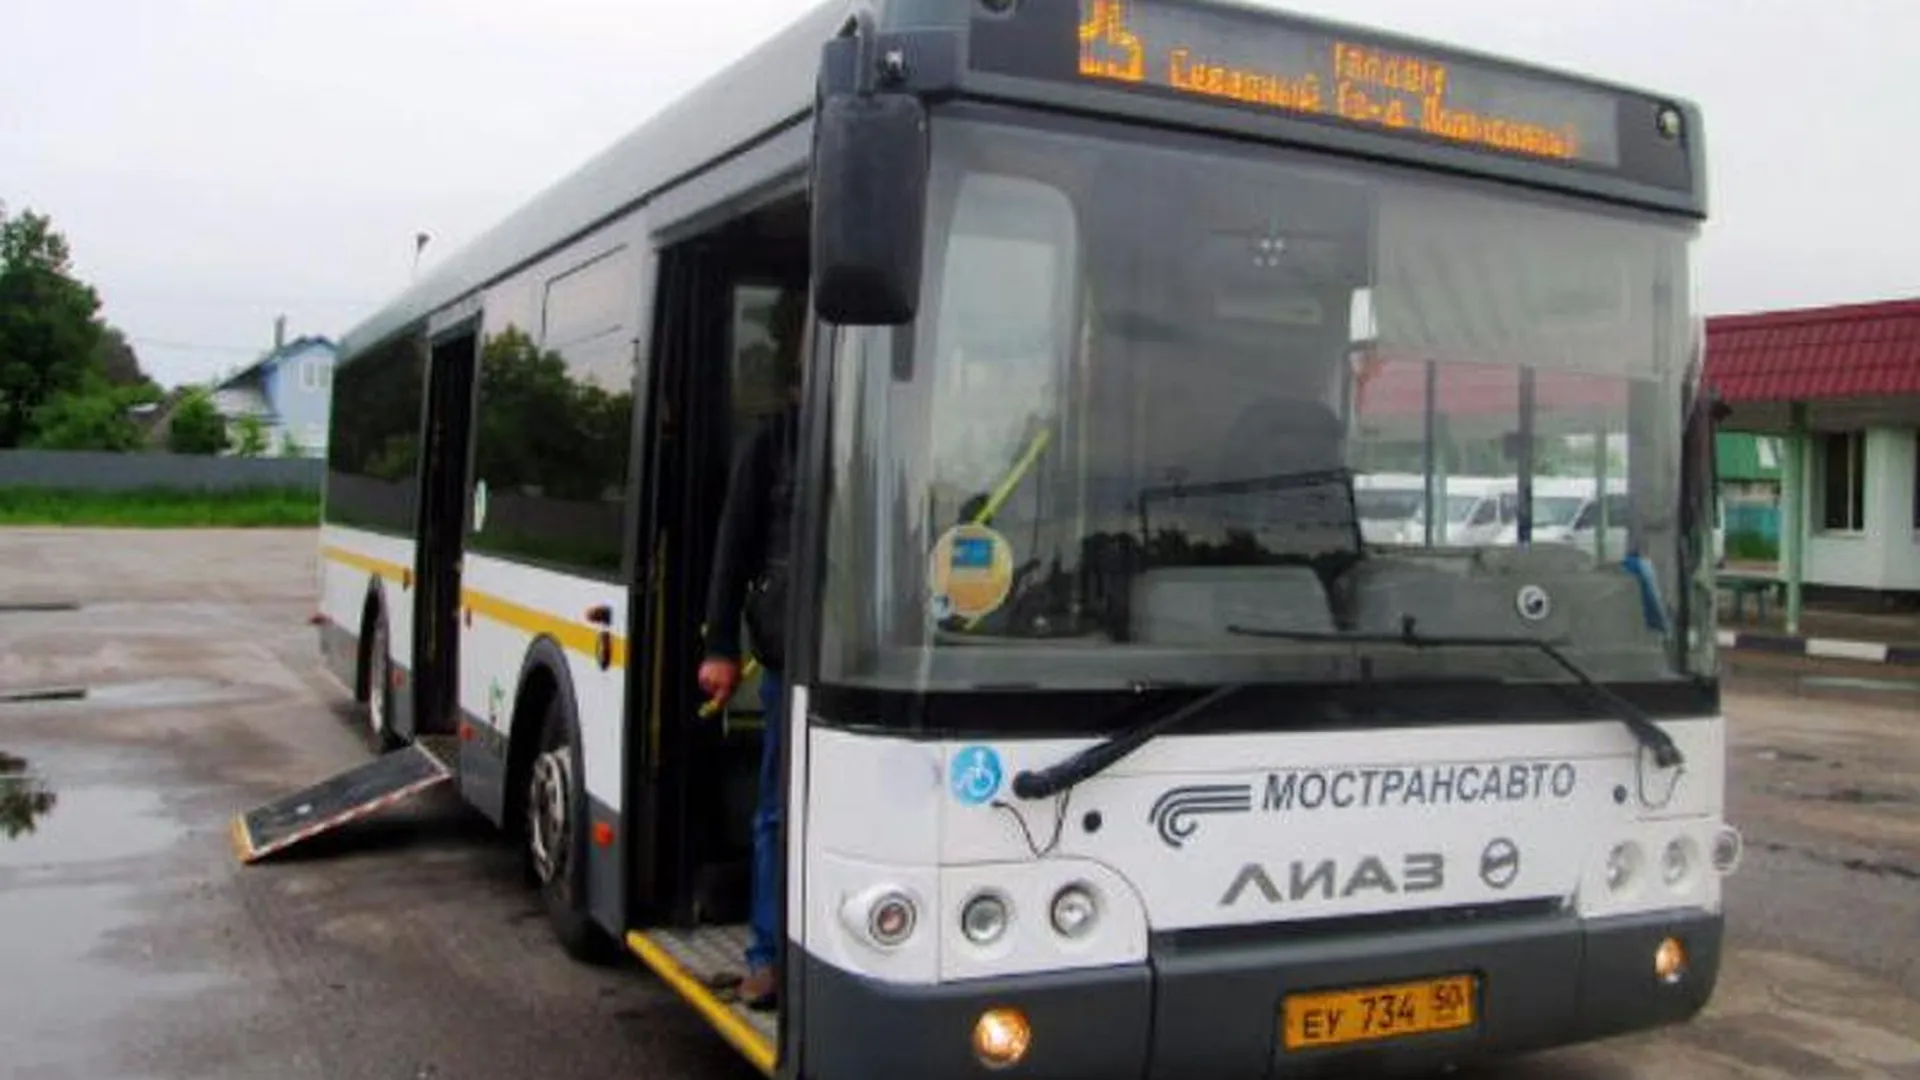 Тремя новыми автобусами обзавелся Чеховский район  